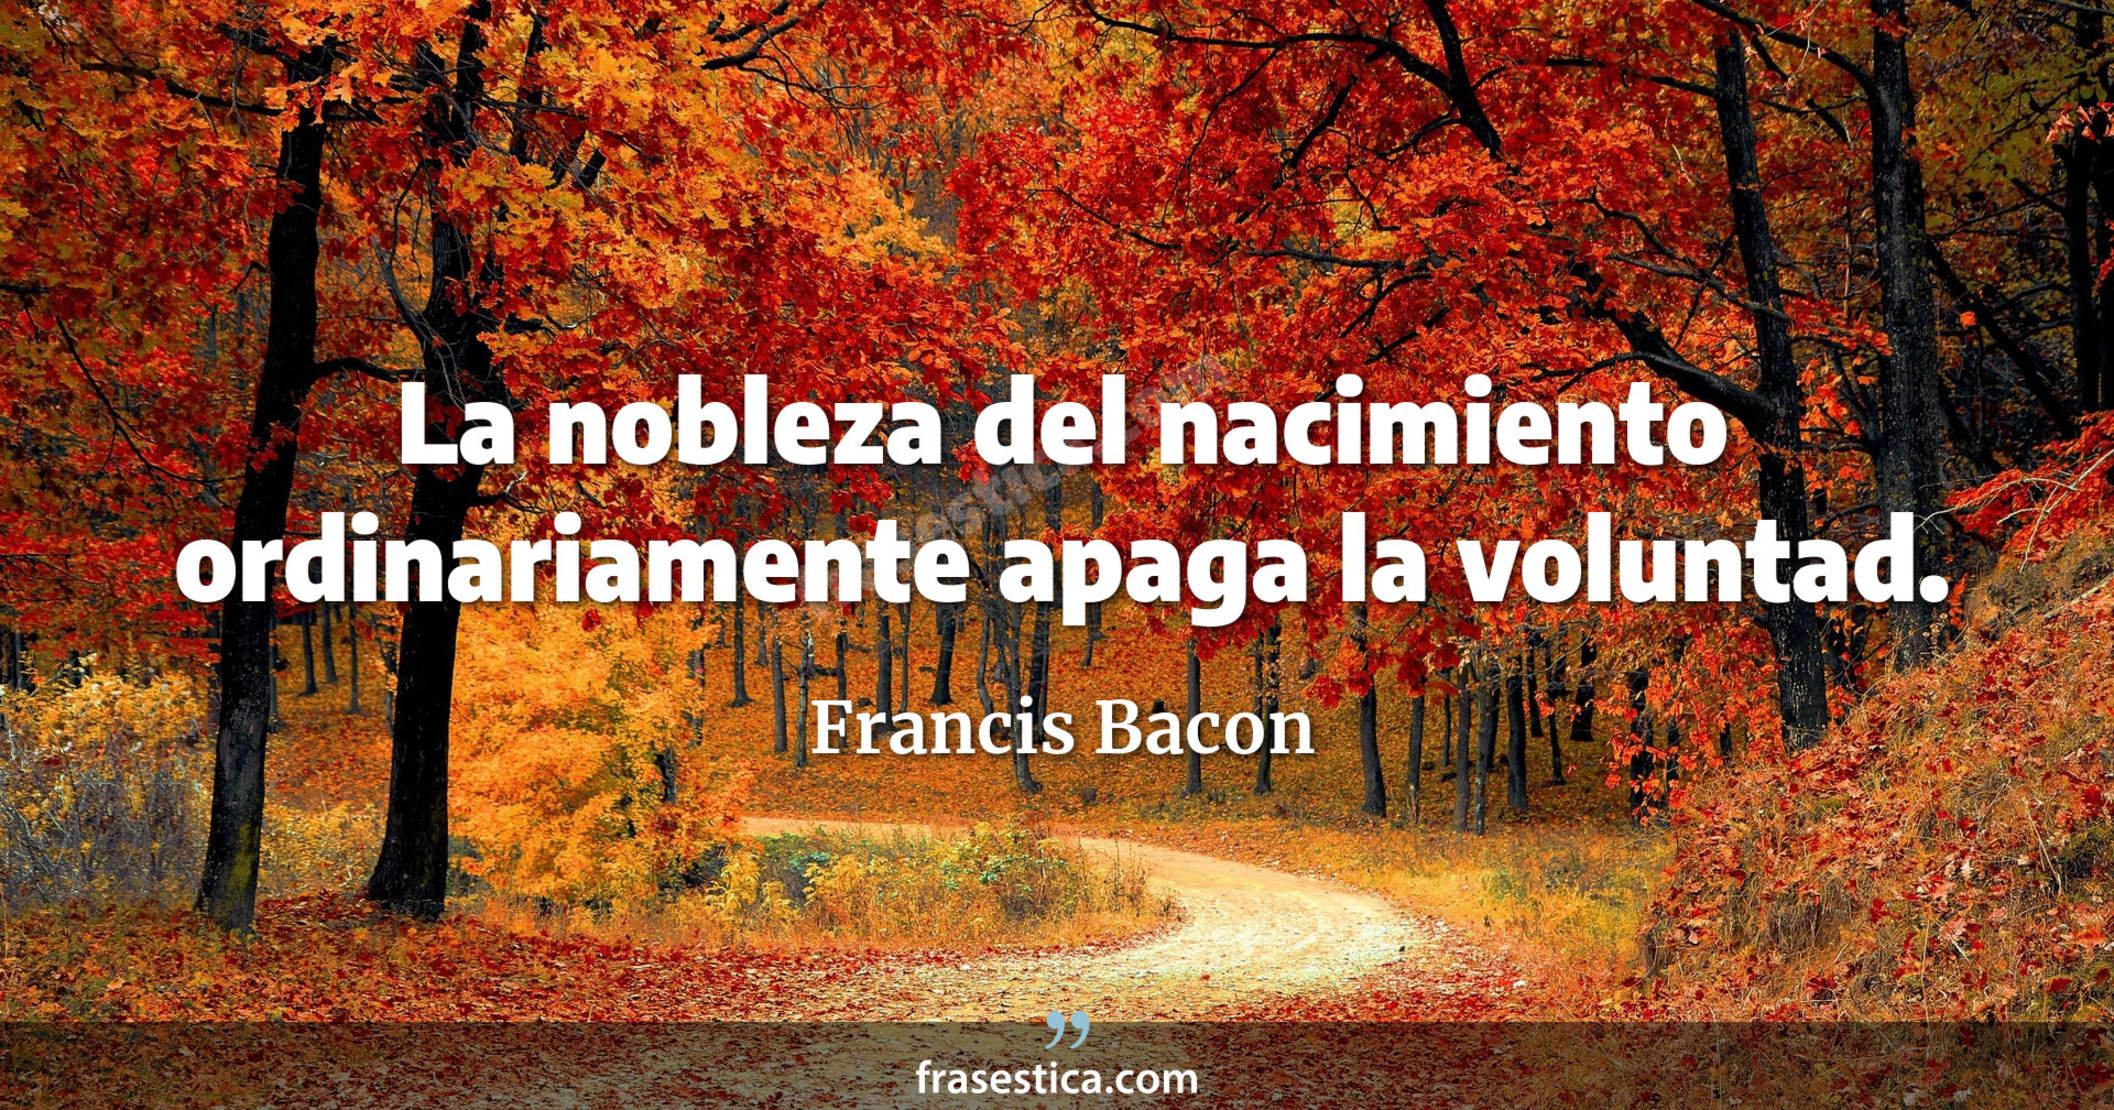 La nobleza del nacimiento ordinariamente apaga la voluntad. - Francis Bacon